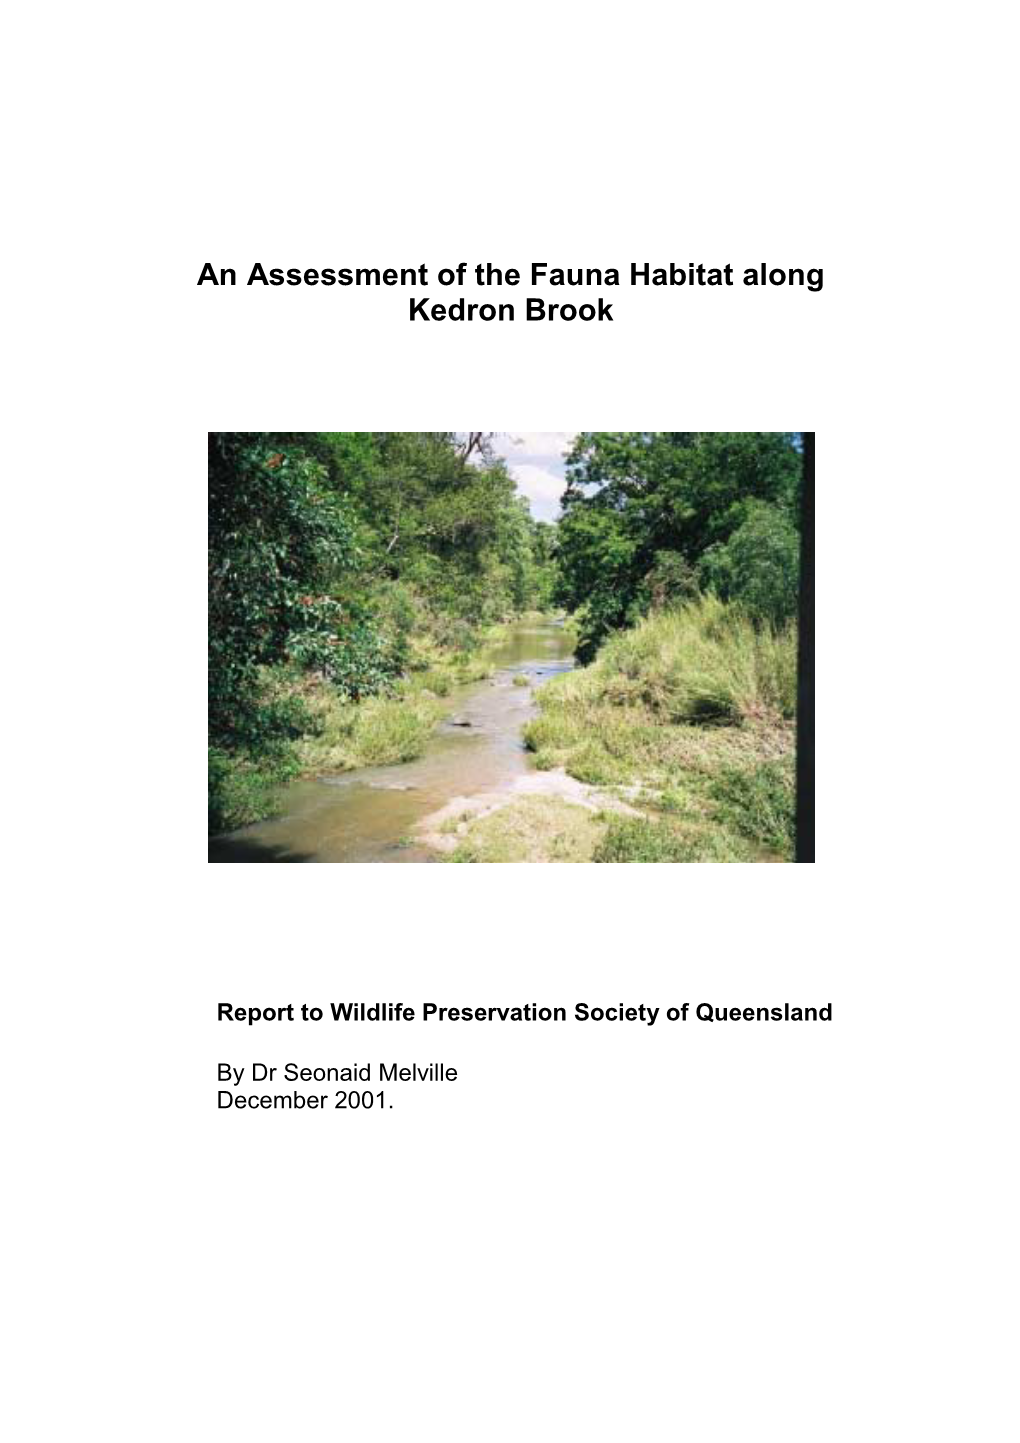 An Assessment of the Fauna Habitat Along Kedron Brook